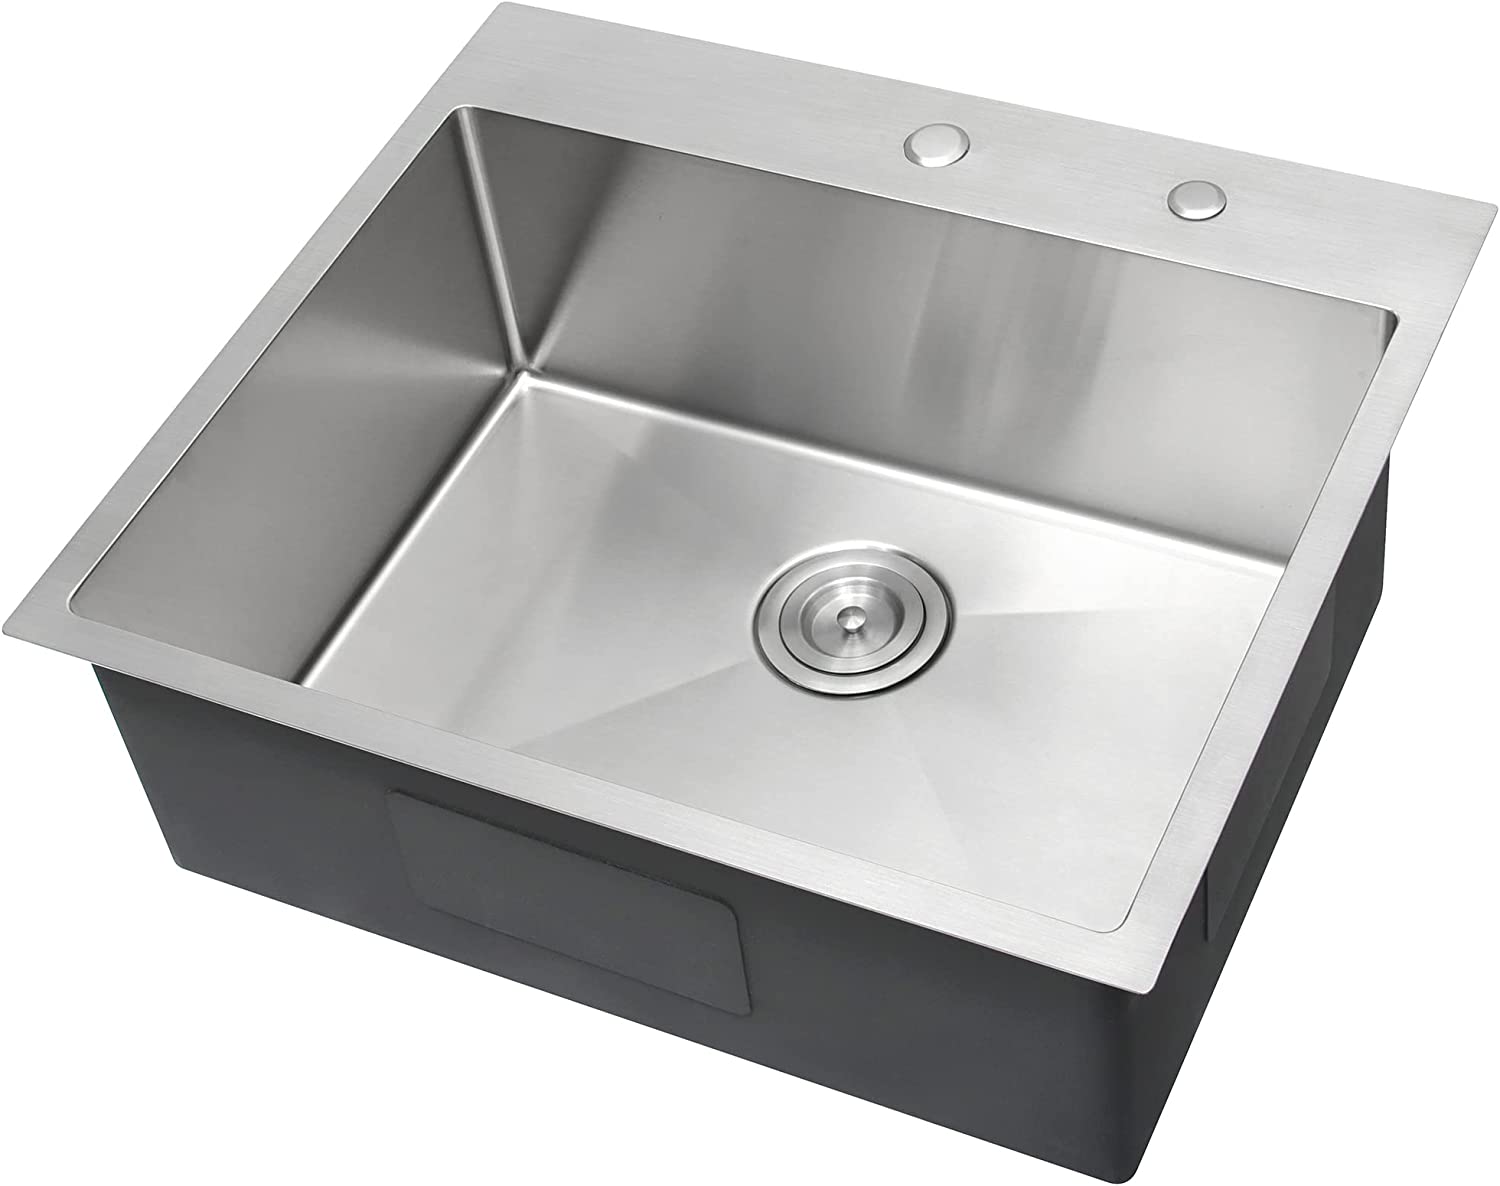 25x22 kitchen sink drop-in